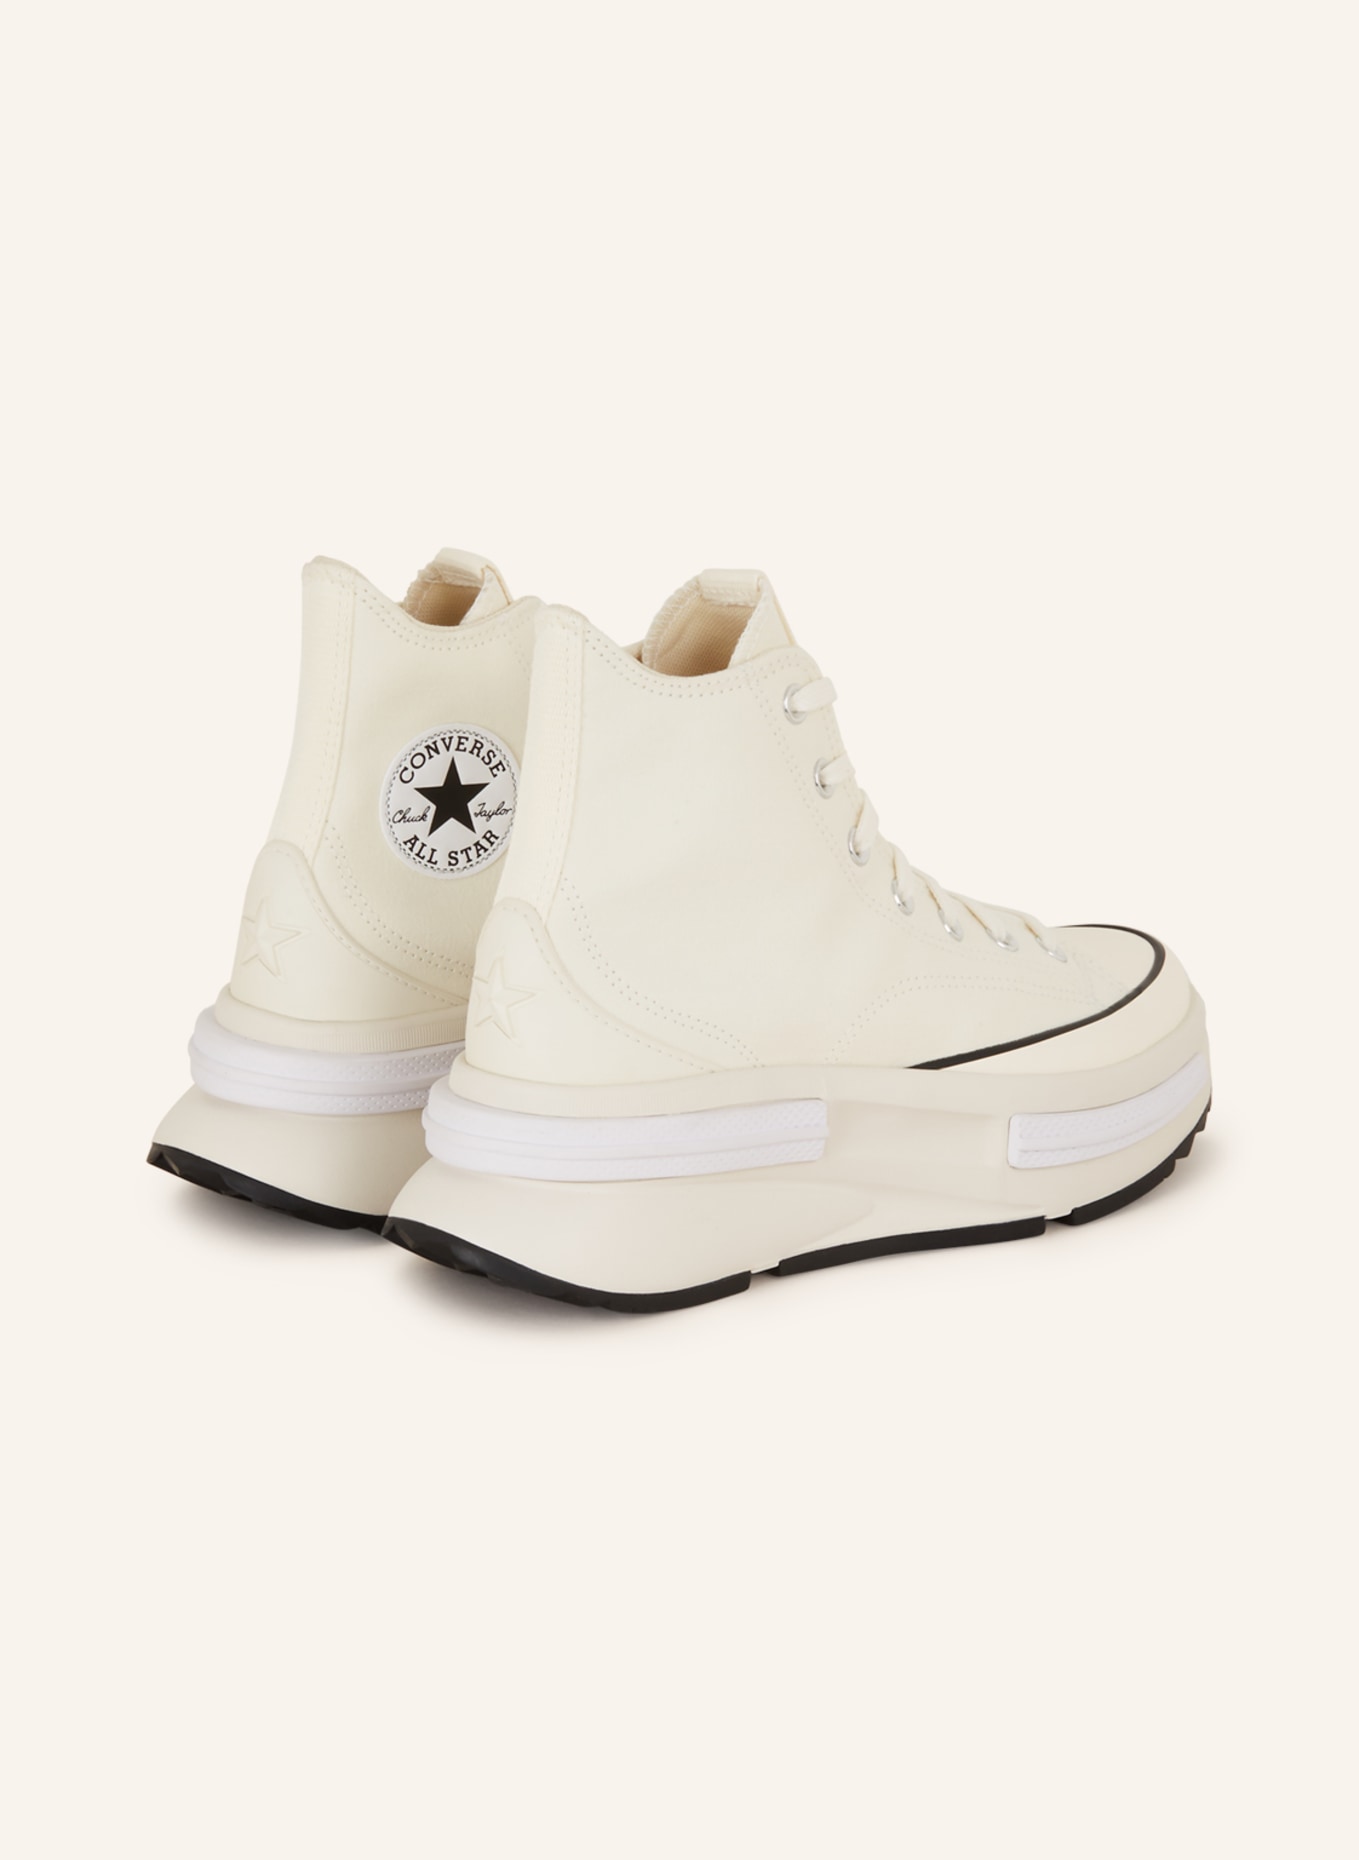 CONVERSE Hightop-Sneaker RUN STAR LEGACY CX, Farbe: ECRU (Bild 2)